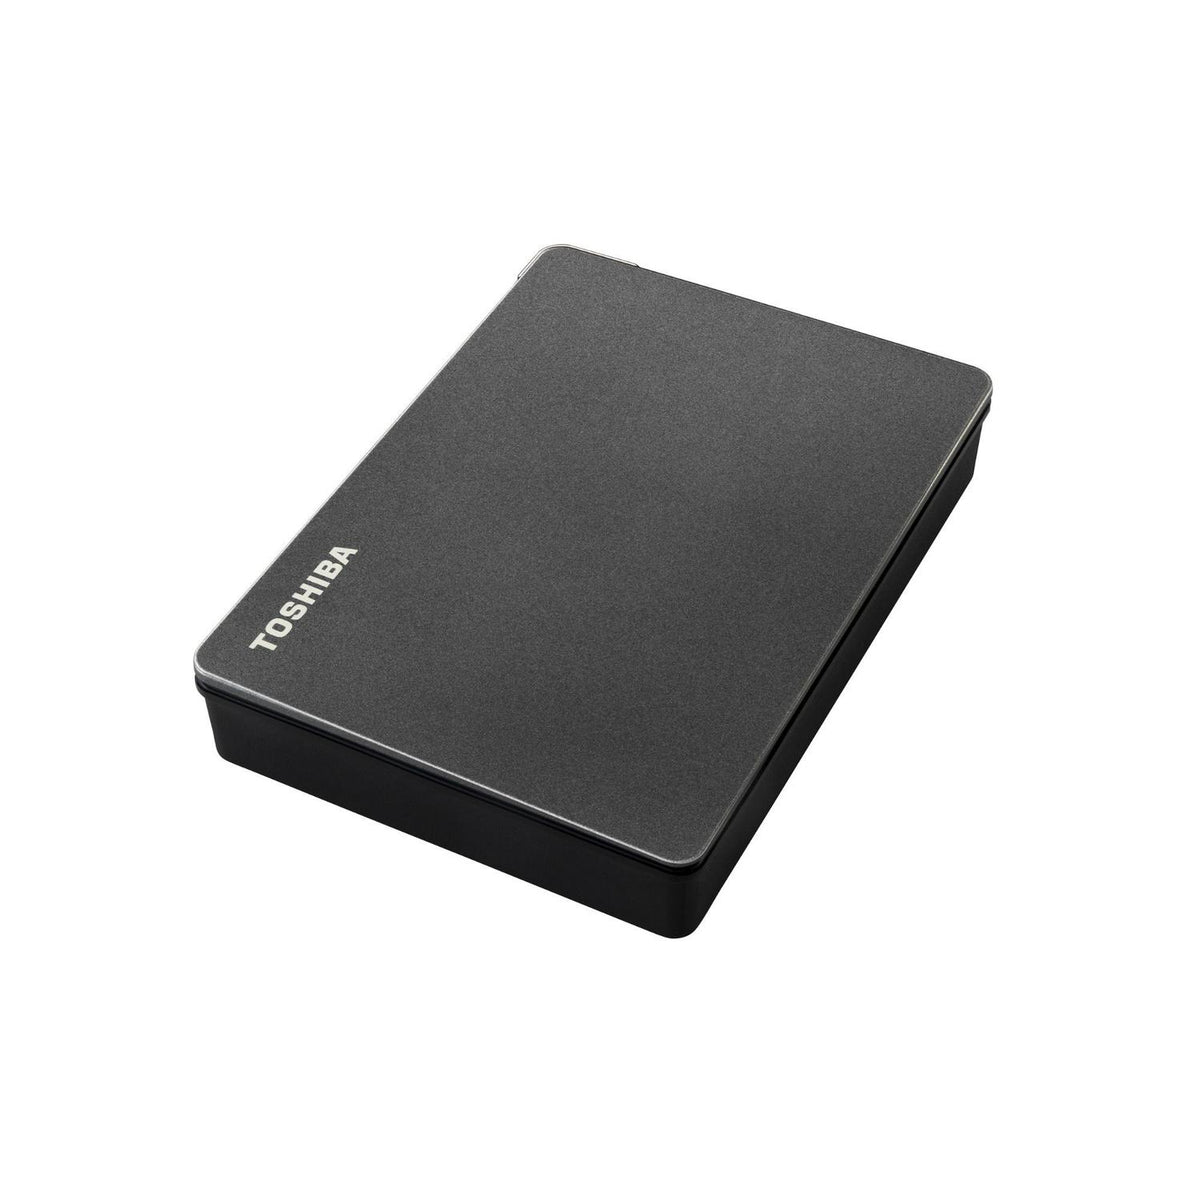 Toshiba Disco Duro Externo Disco Duro Externo Portátil Canvio Gamer 1TB USB 3.0 - vertikal